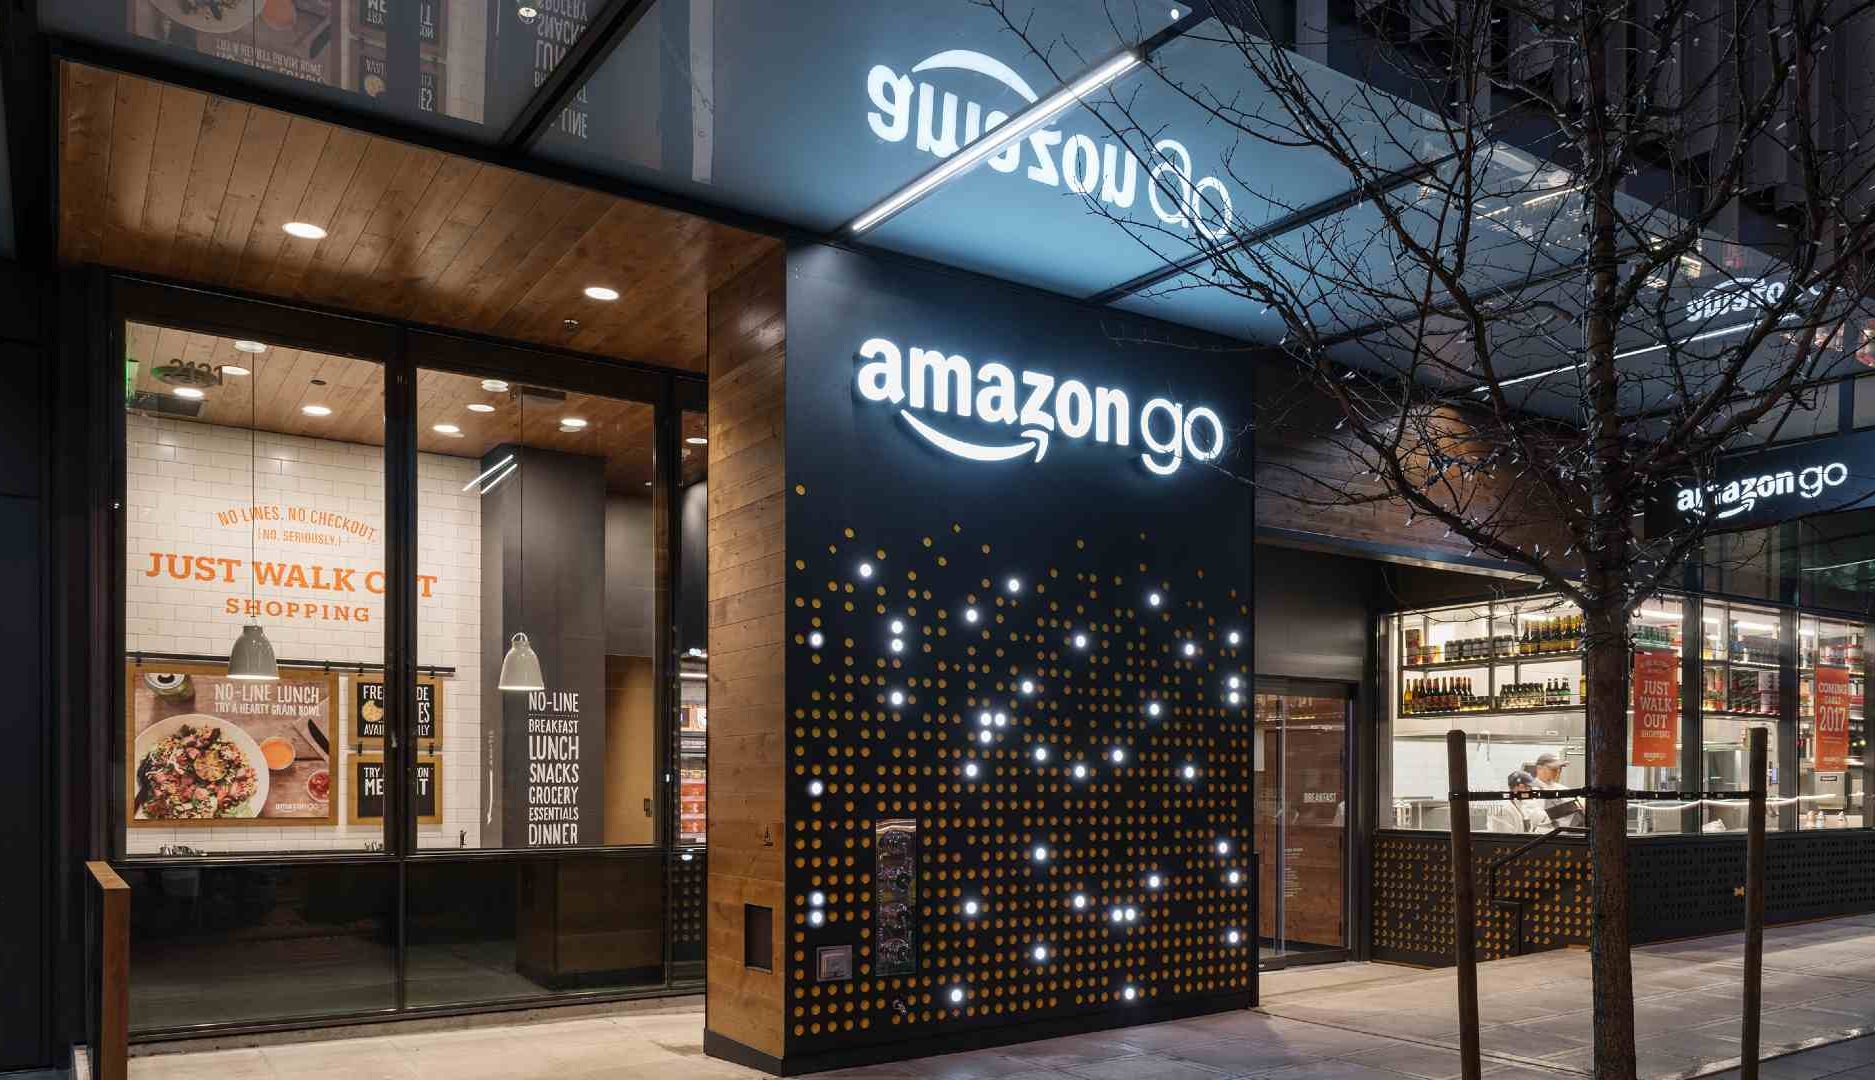 Amazon Go cerrará 8 tiendas en Estados Unidos buscando la reducción de costes